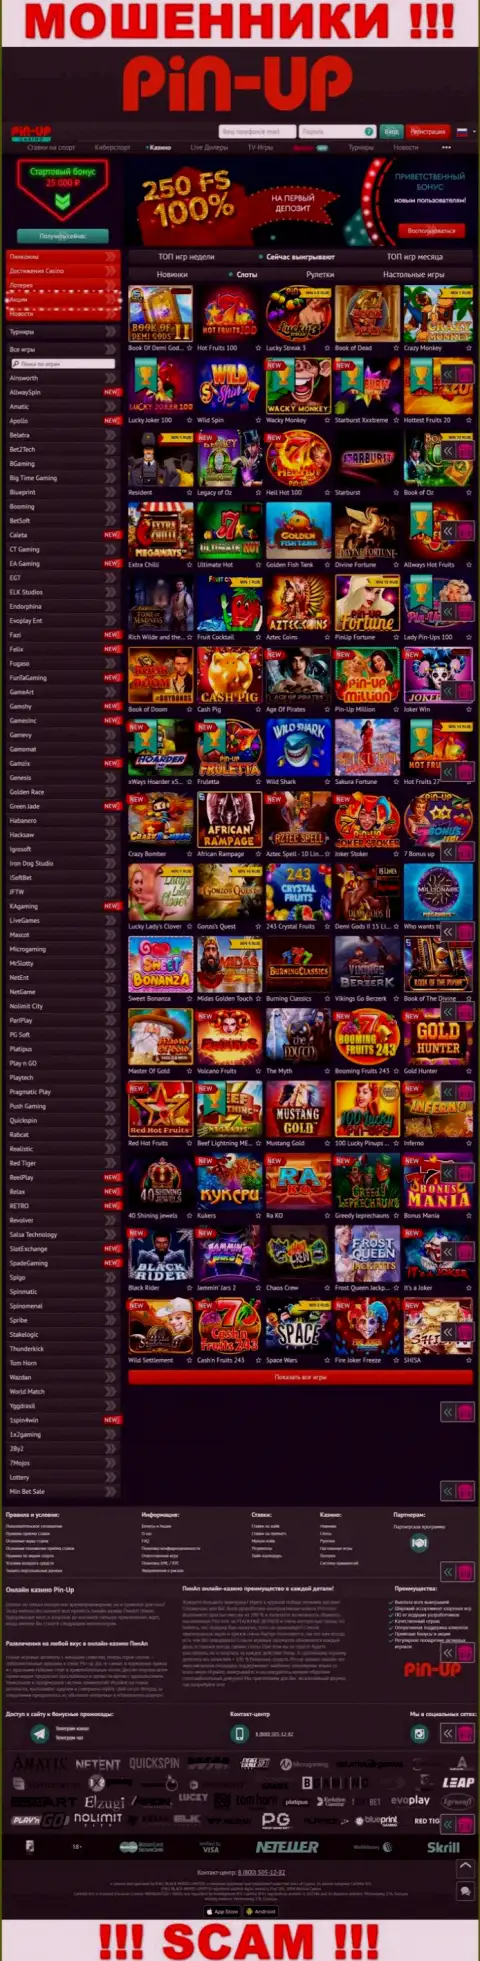 Pin-Up Casino - это официальный сайт интернет-мошенников ПинАп Казино